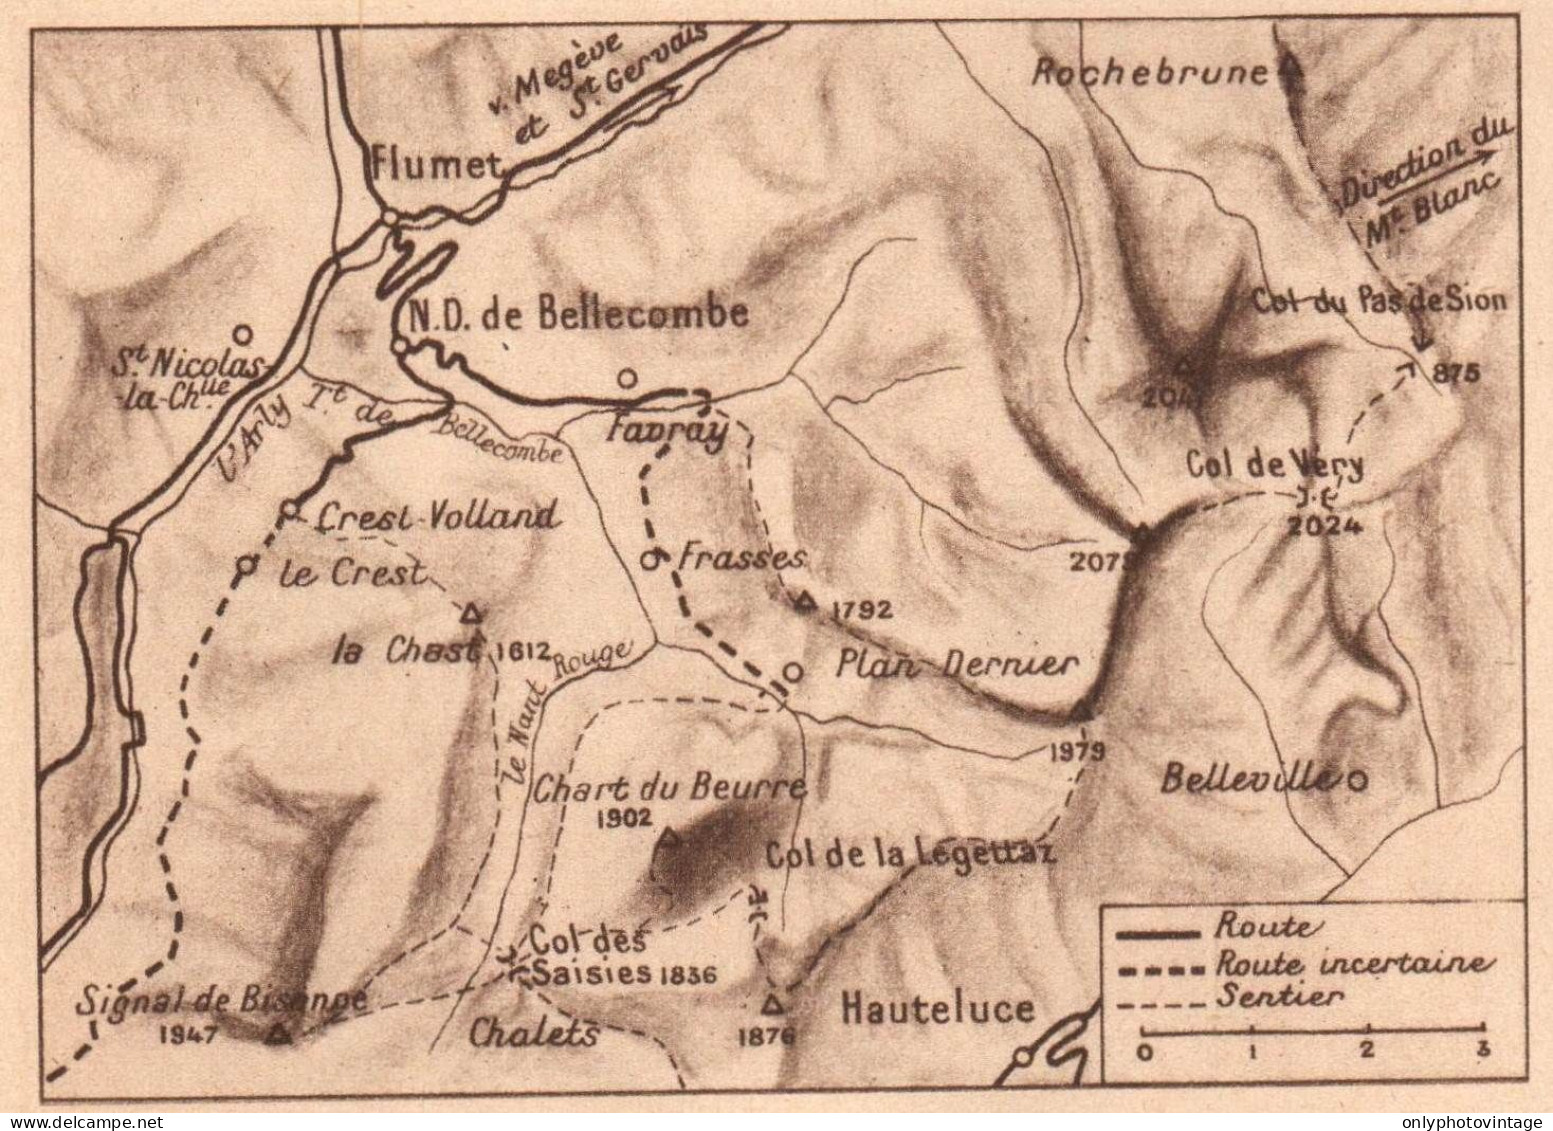 France 1934, Col De Very, Favray, Belleville, Mappa Geografica Vintage Map - Estampes & Gravures